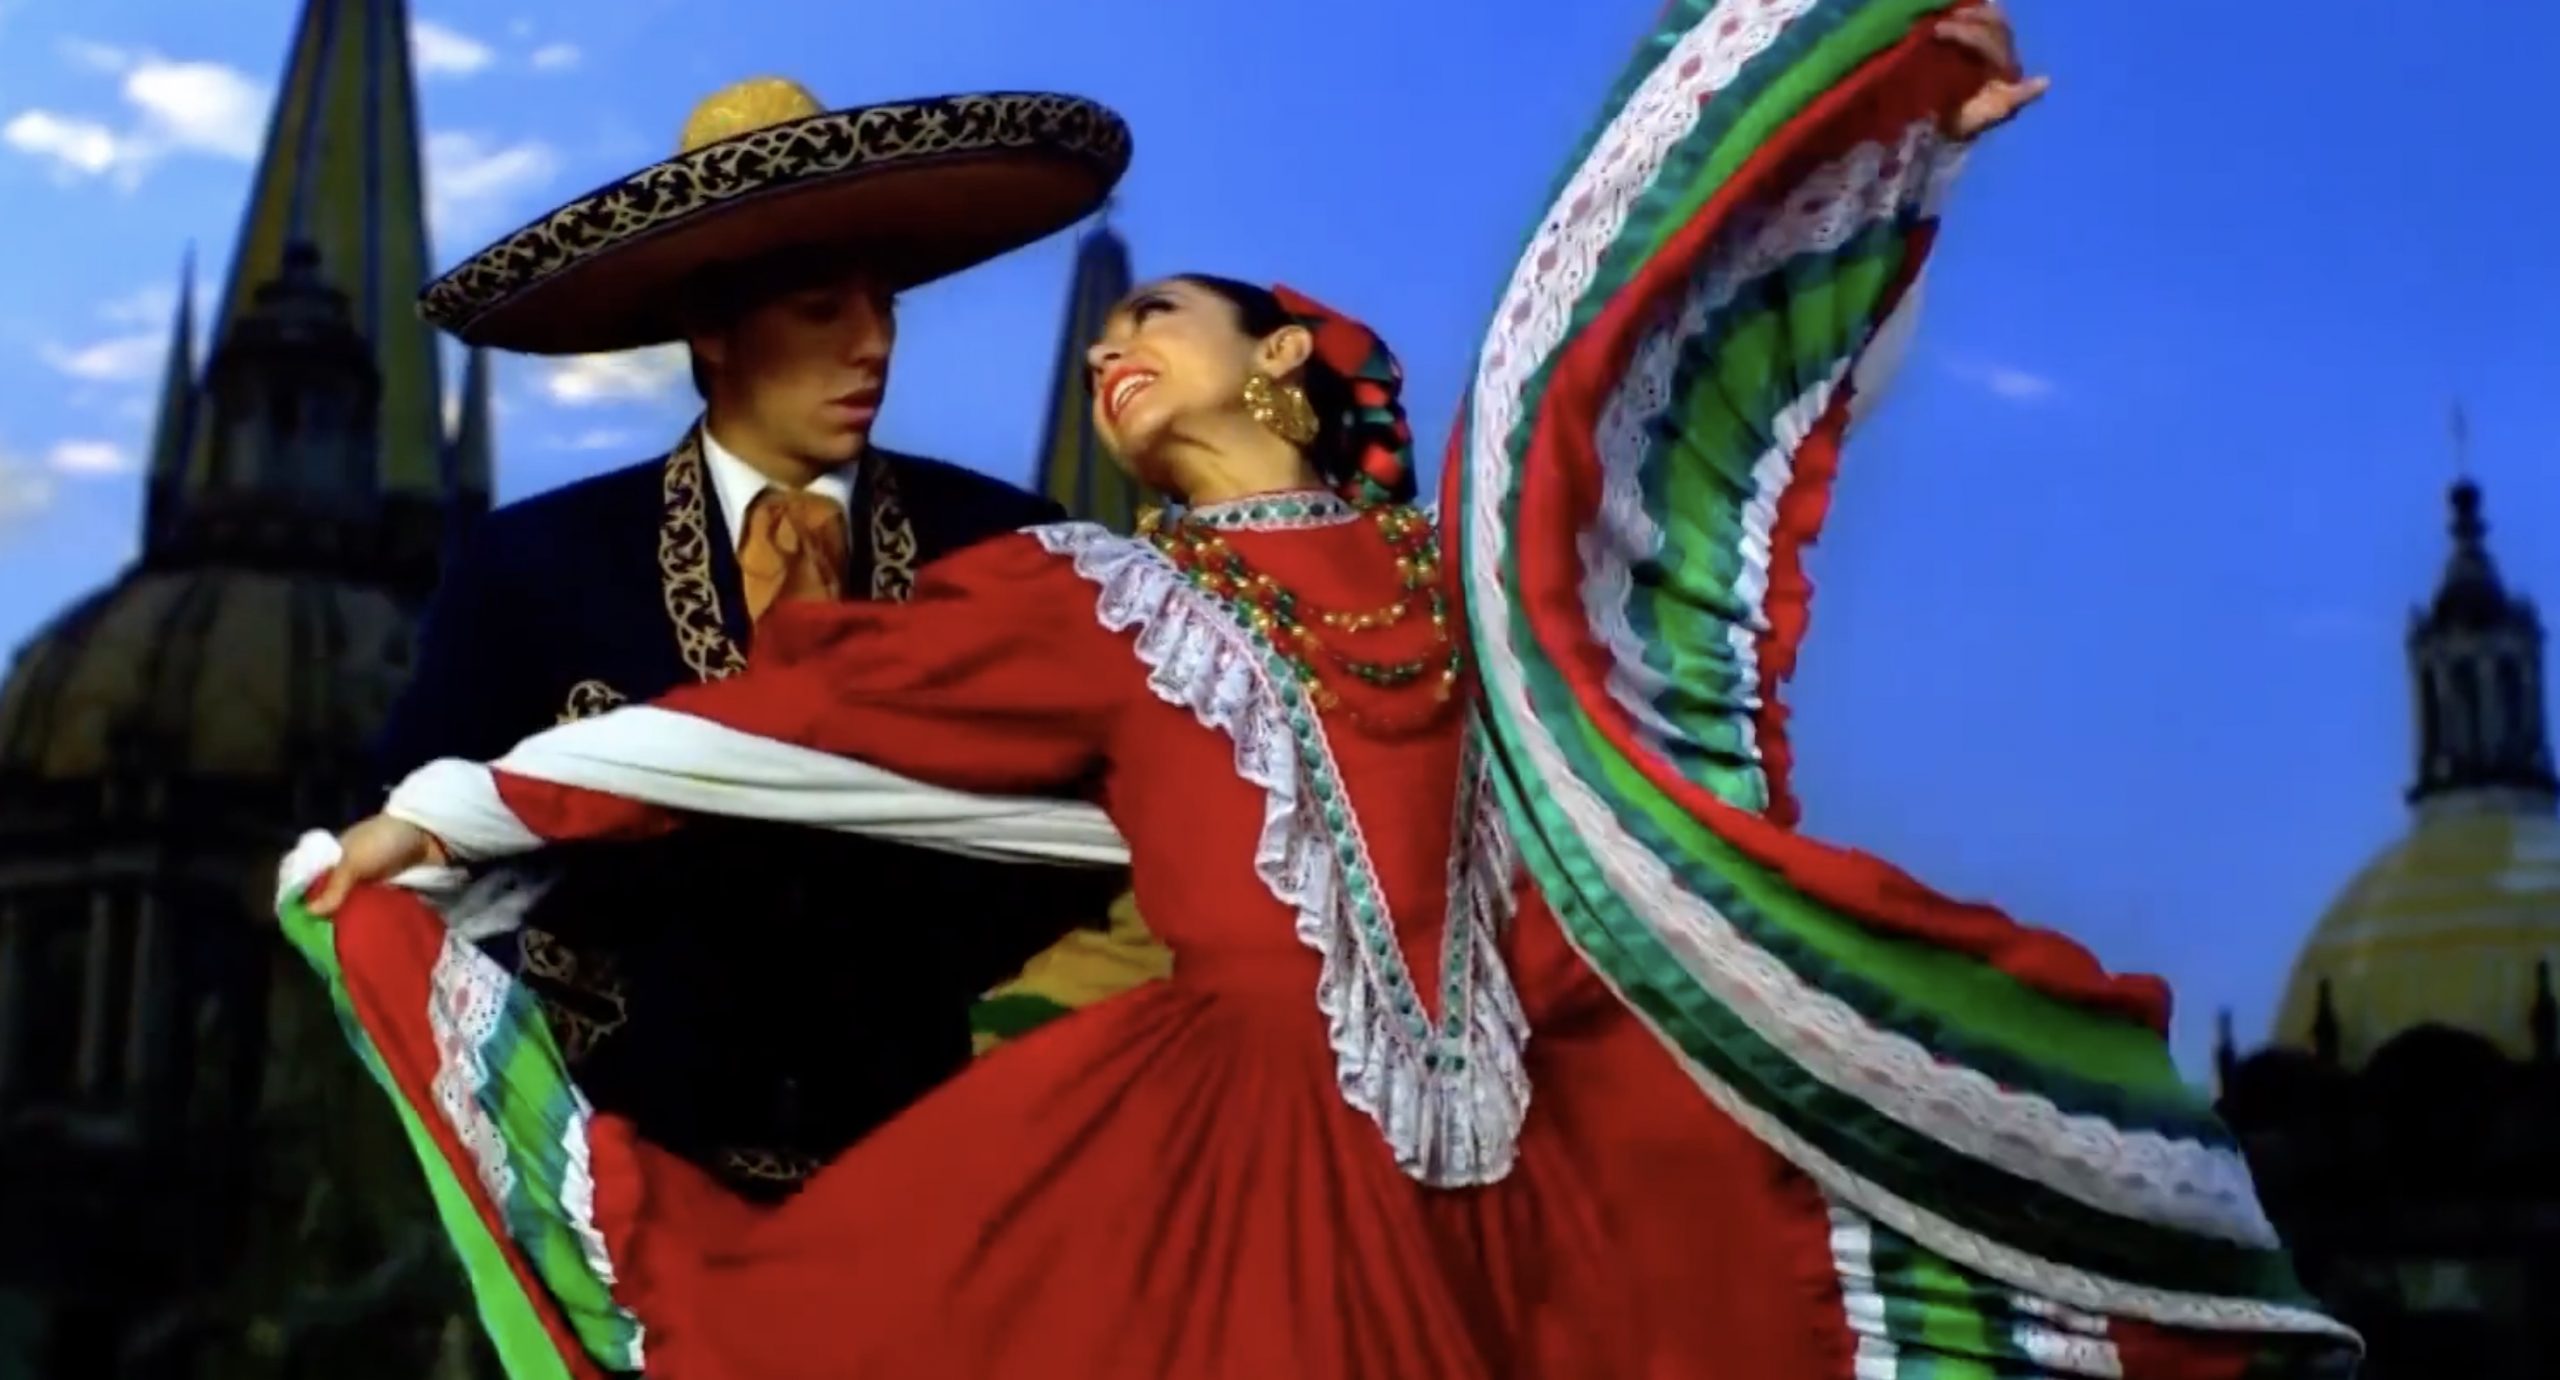 Trajes típicos de México | Tradición regional - Cultura Mexicana